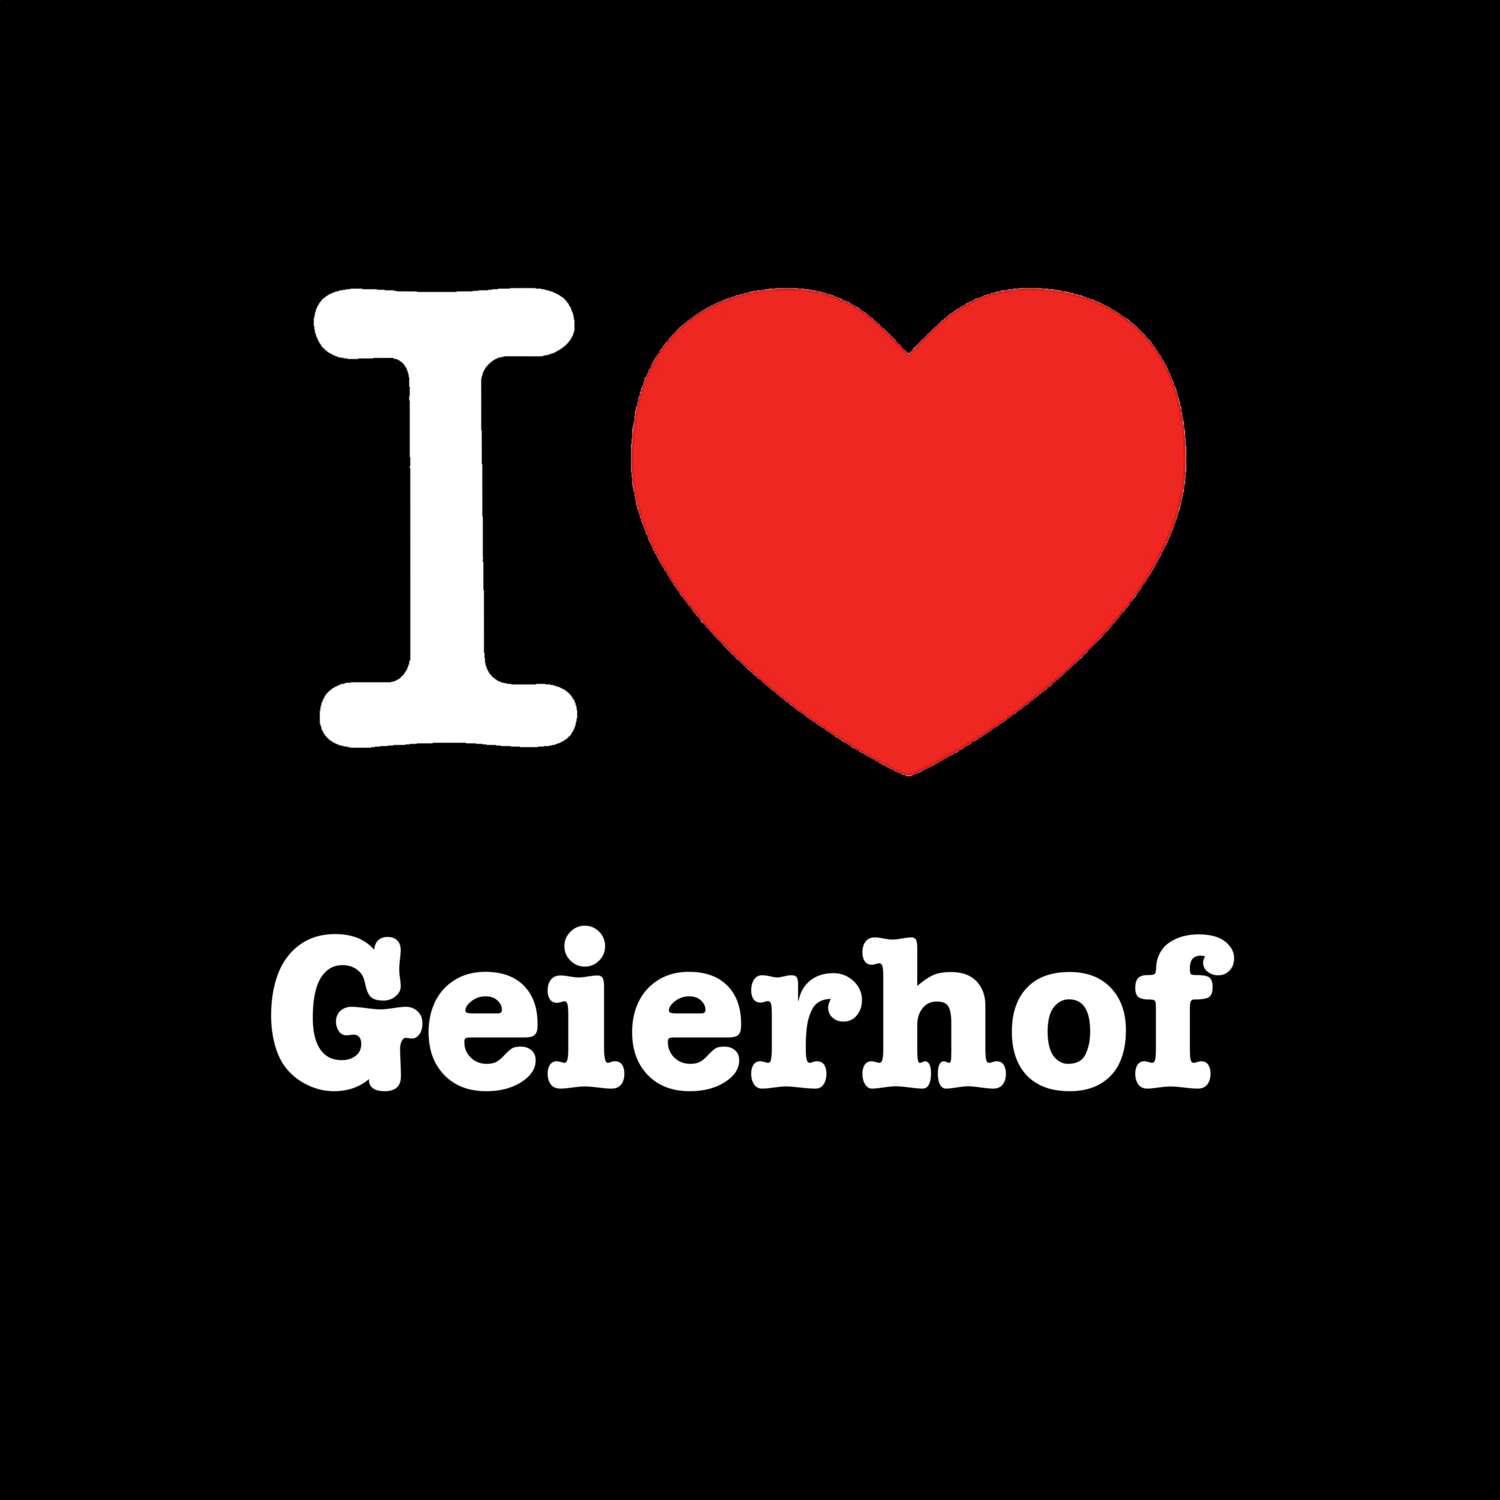 Geierhof T-Shirt »I love«